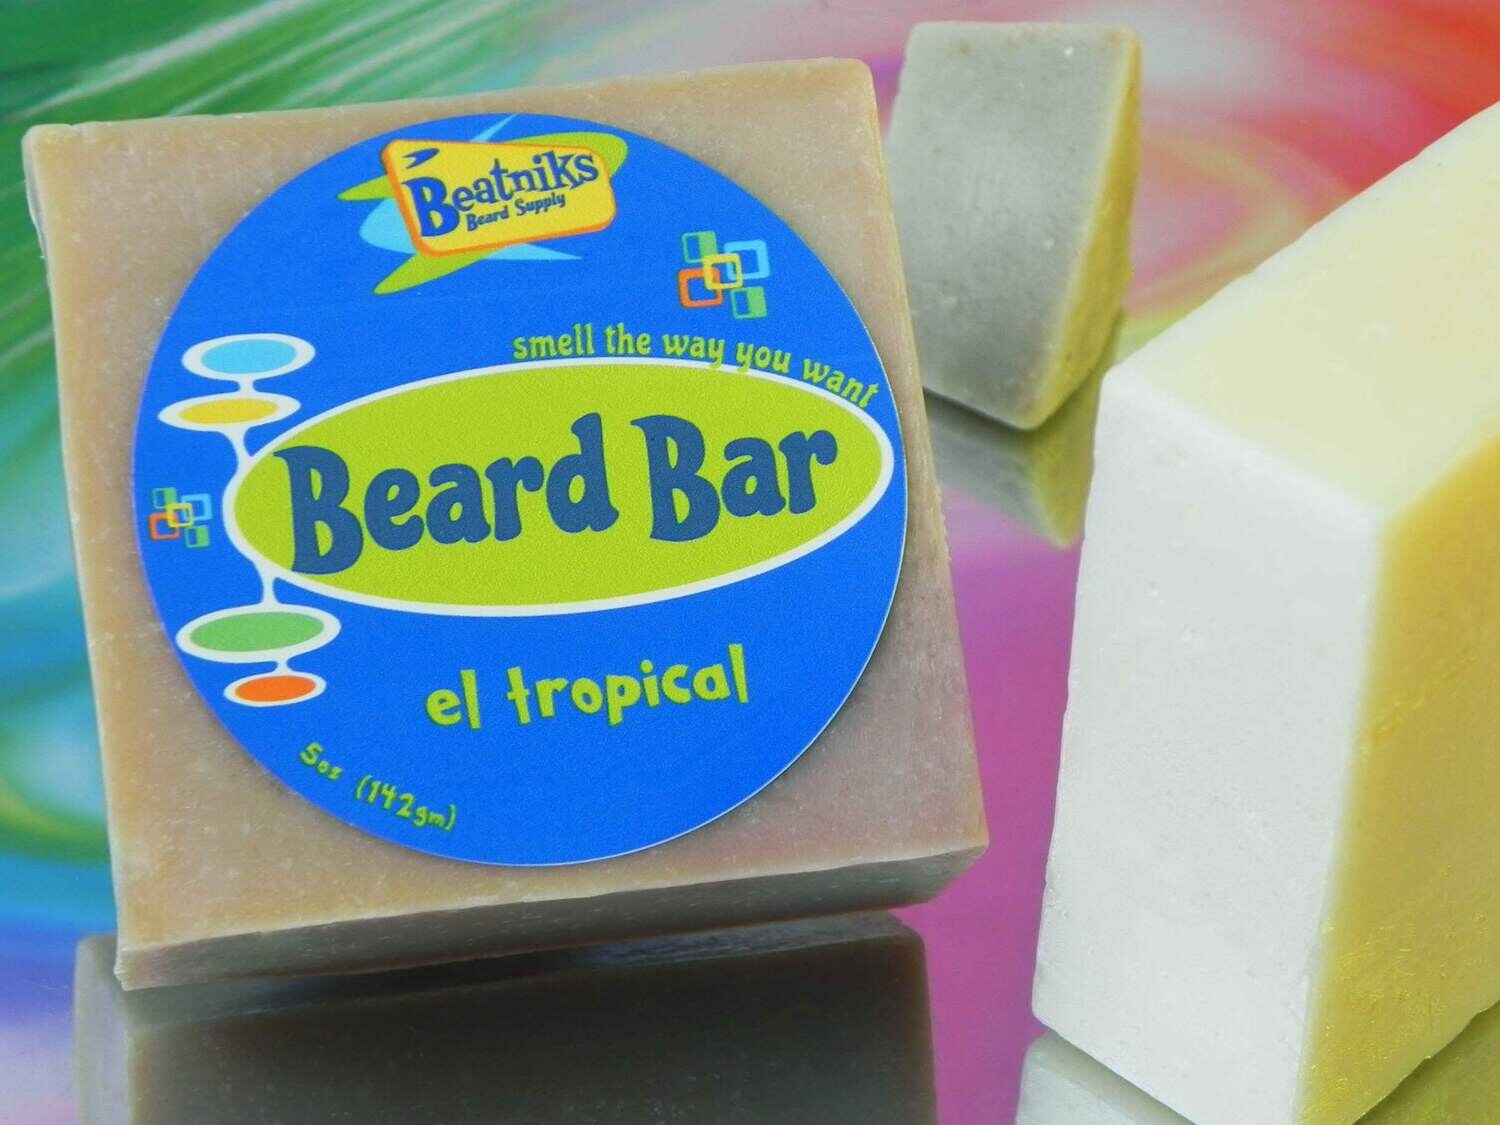 El Tropical | Beard Bar